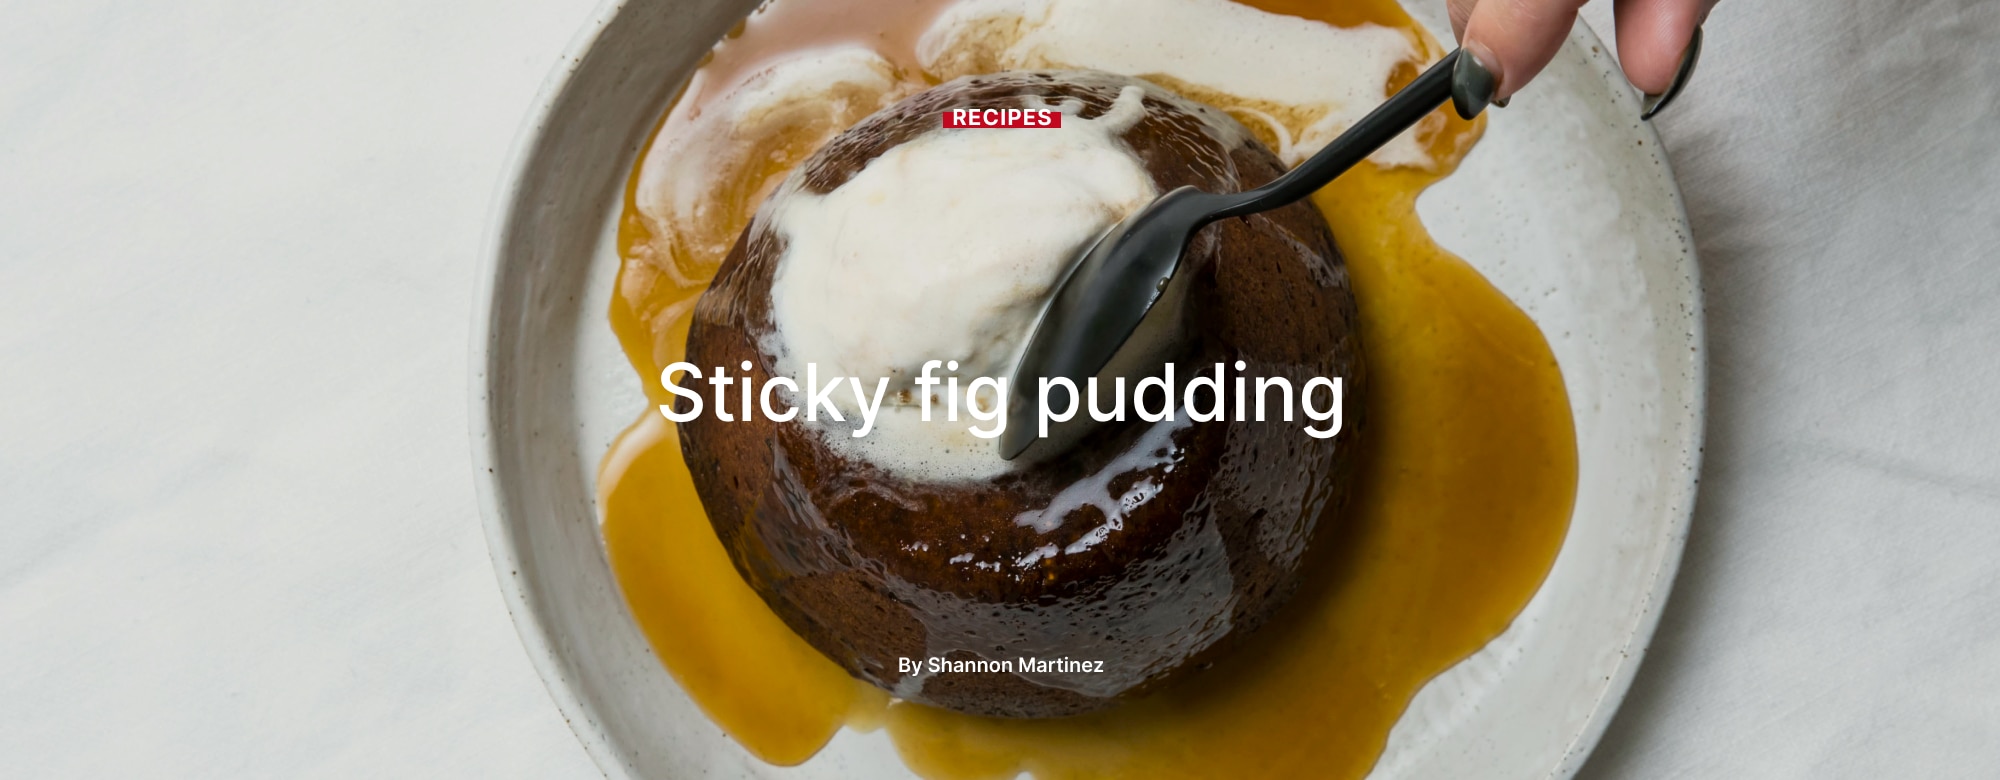 Sticky fig pudding